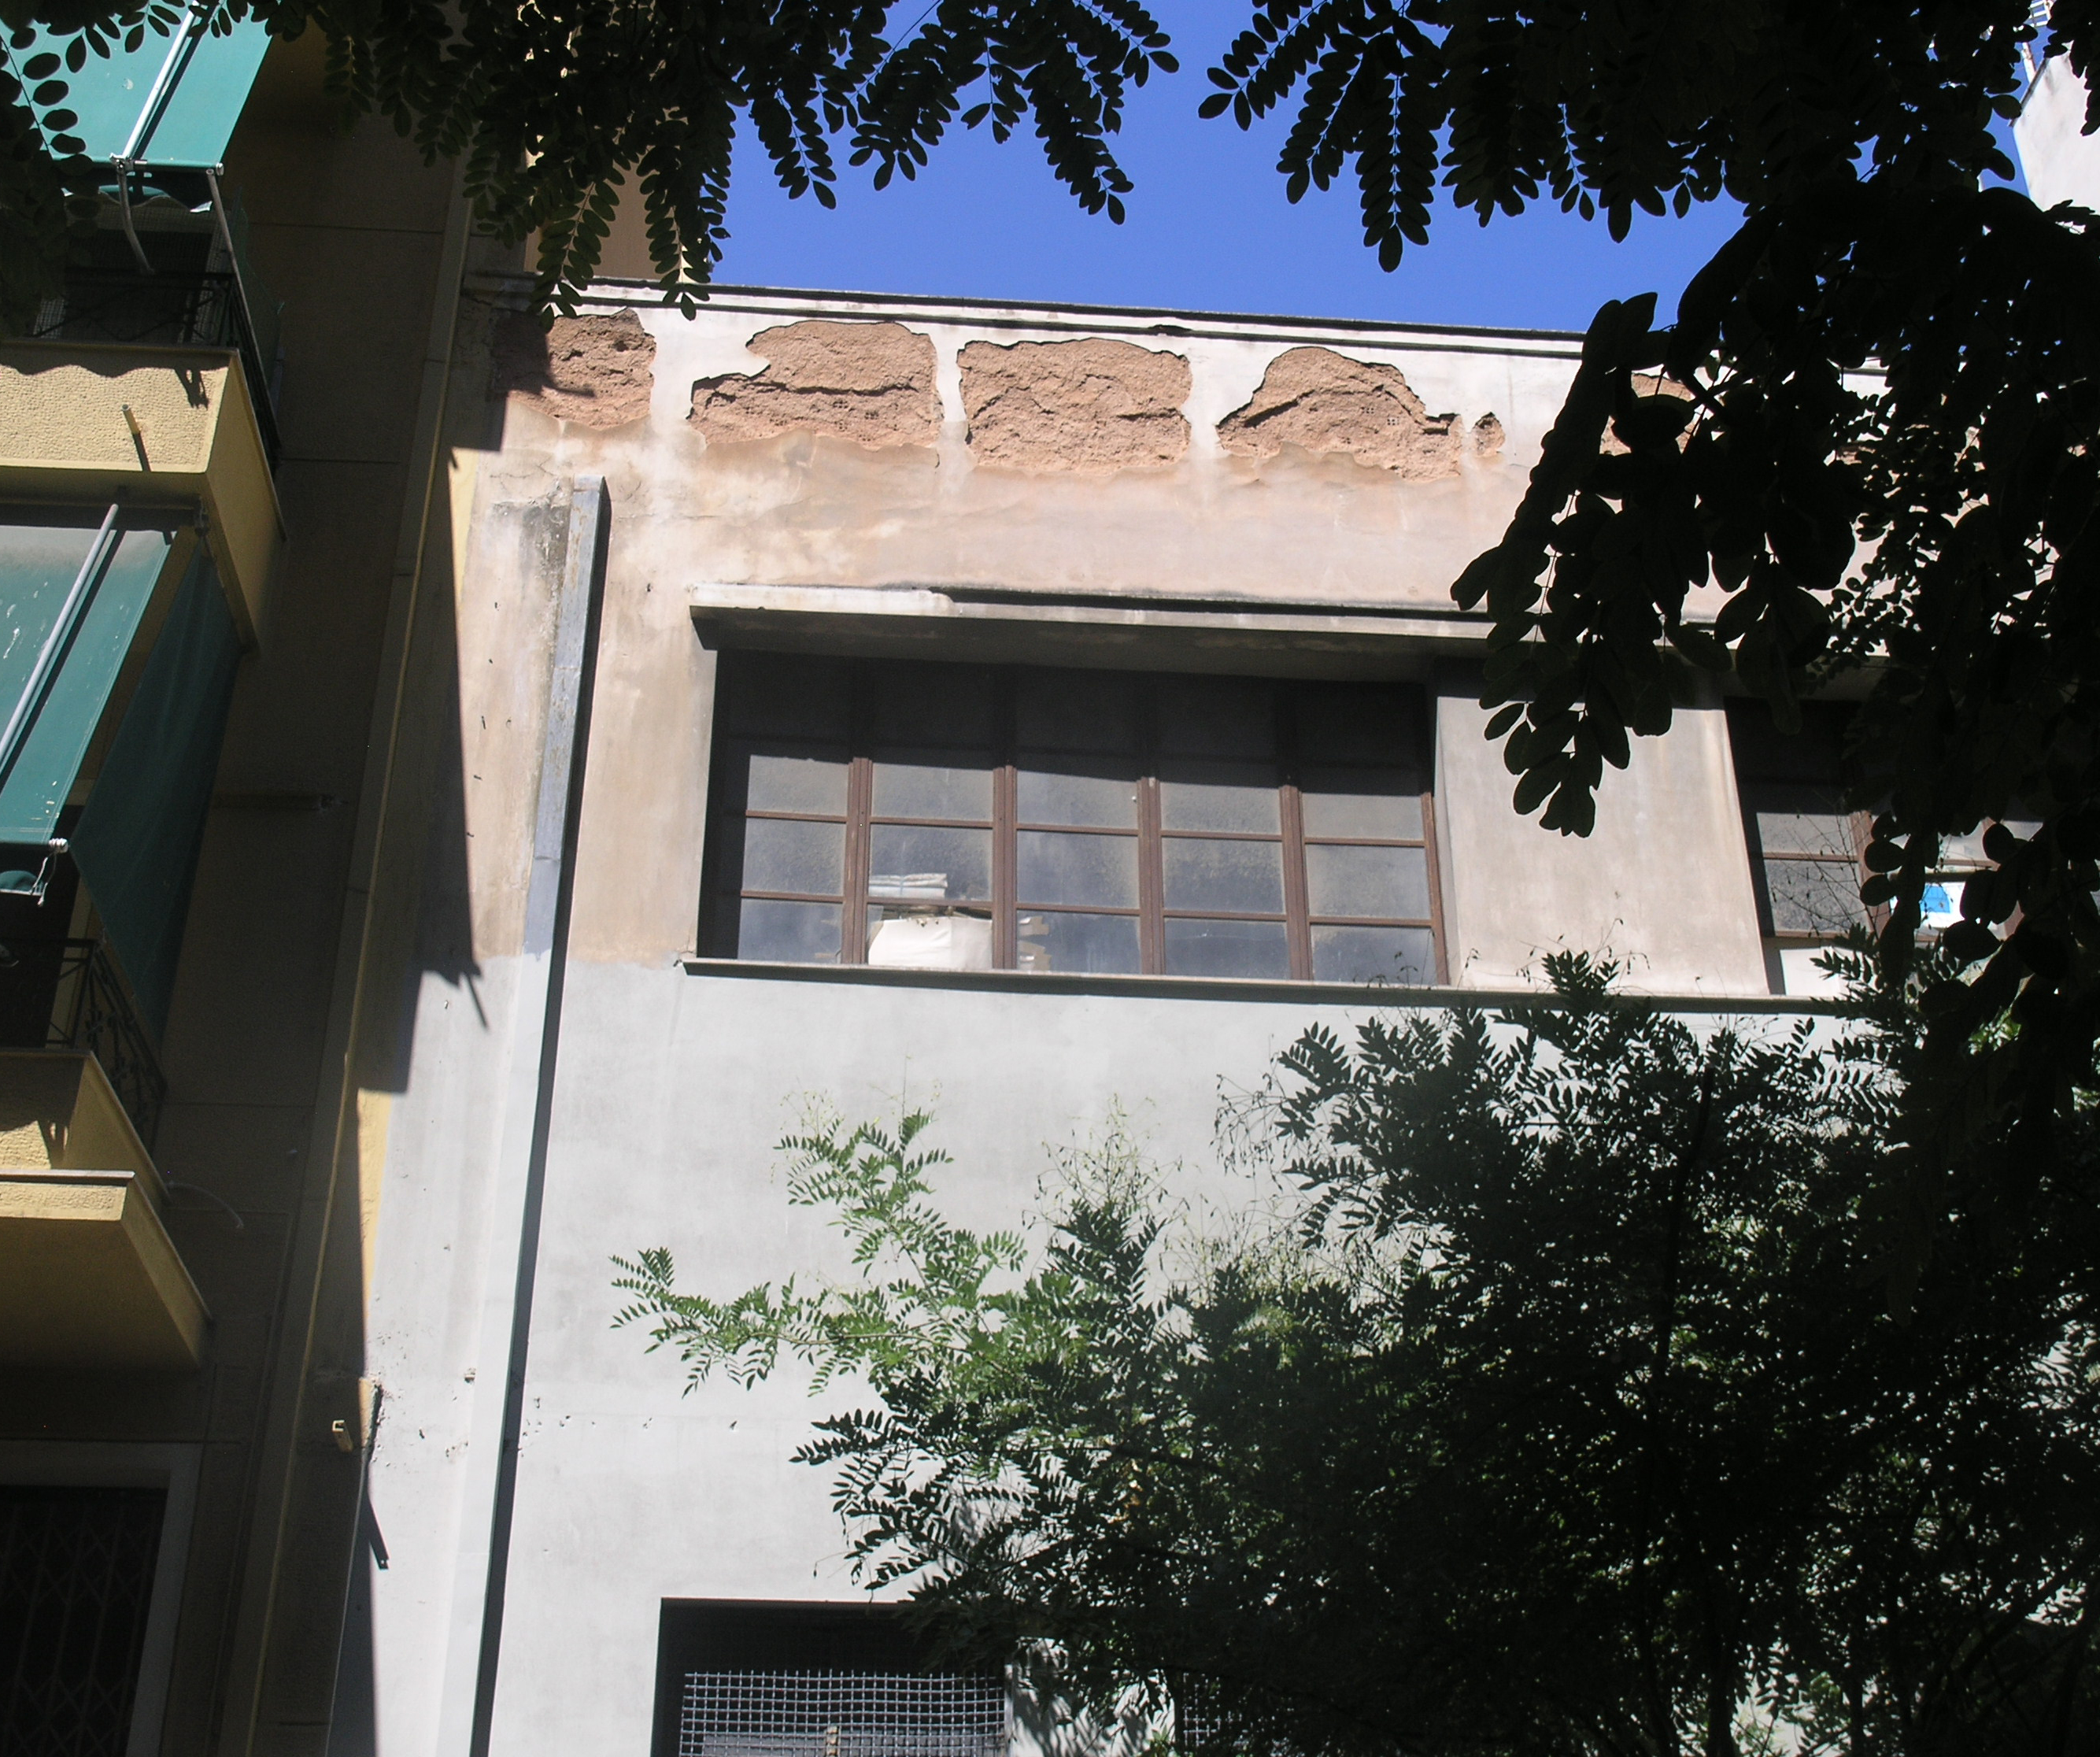 Detail of façade